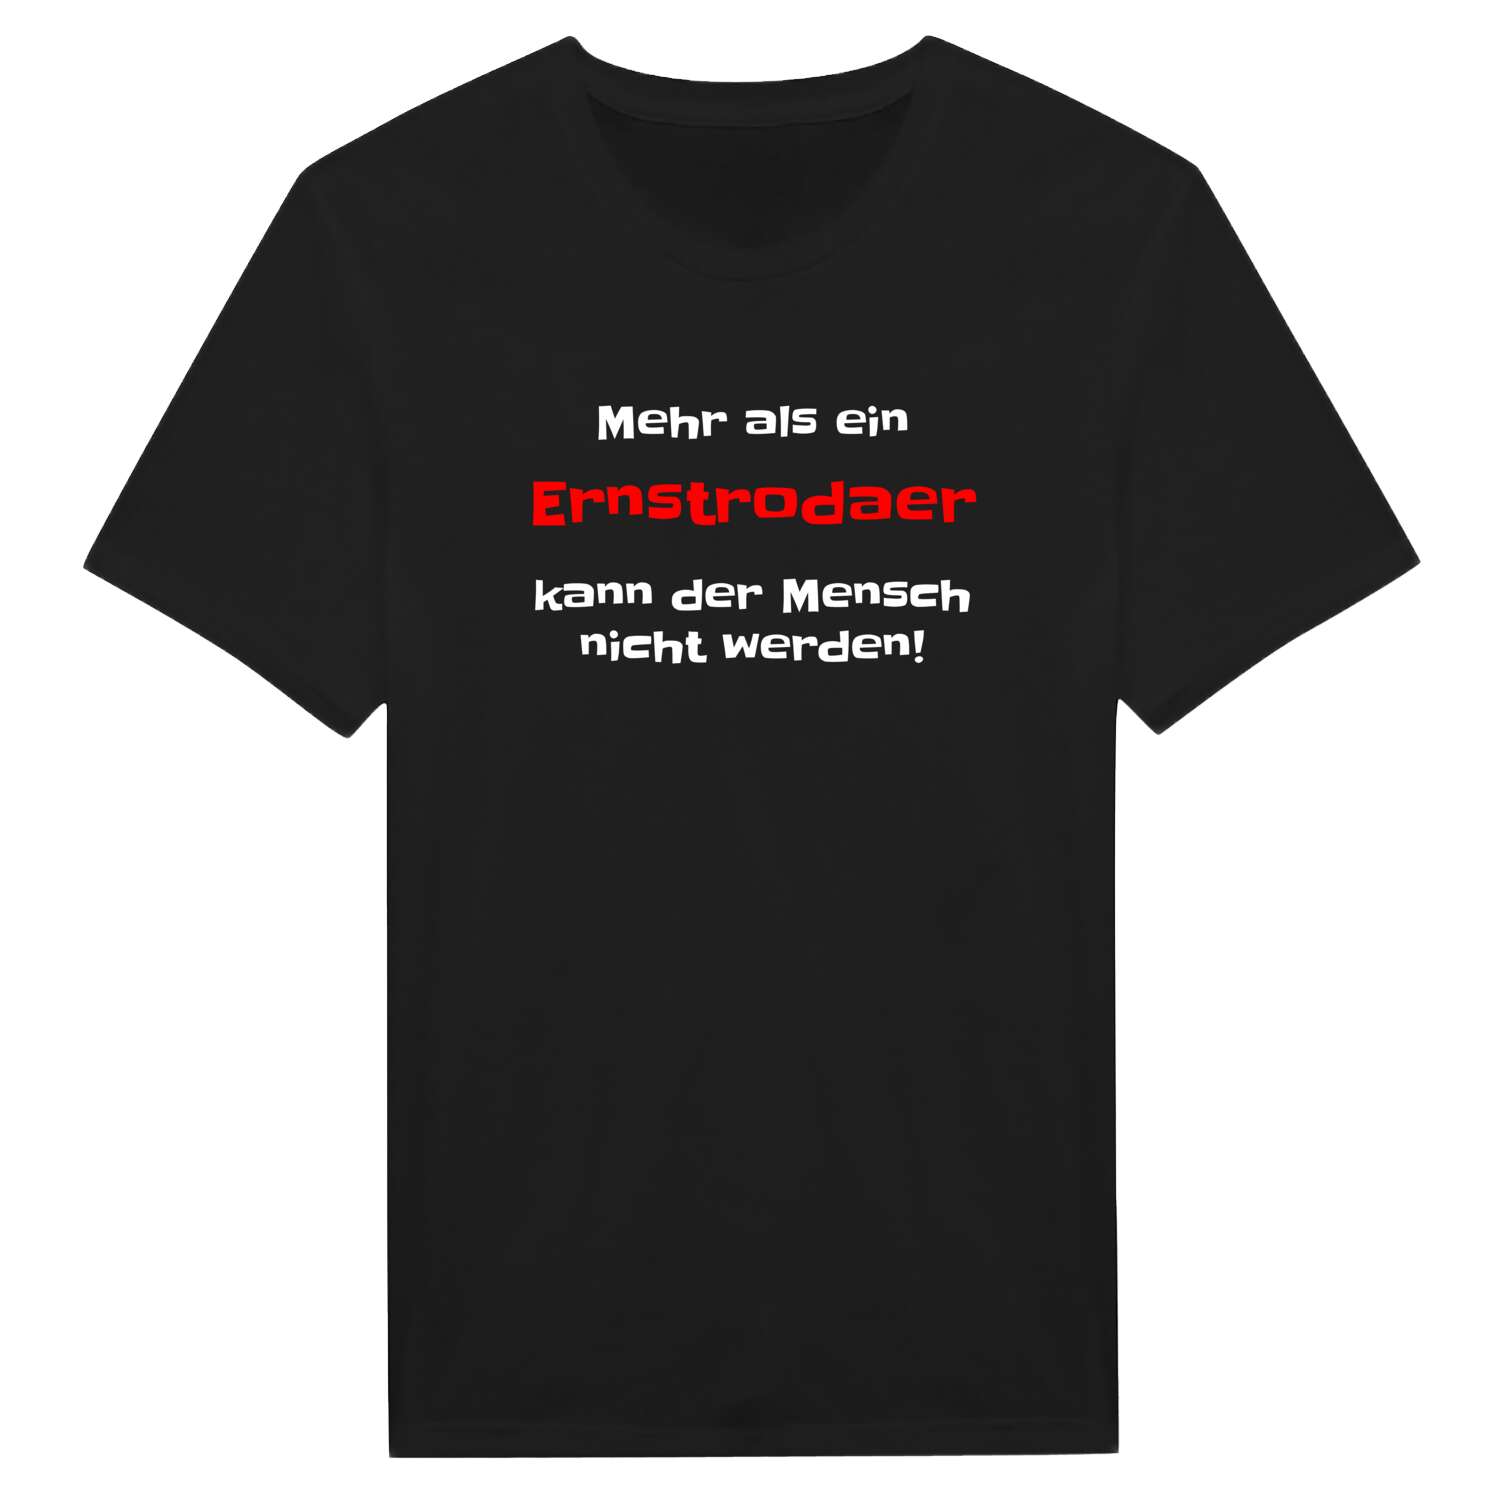 Ernstroda T-Shirt »Mehr als ein«